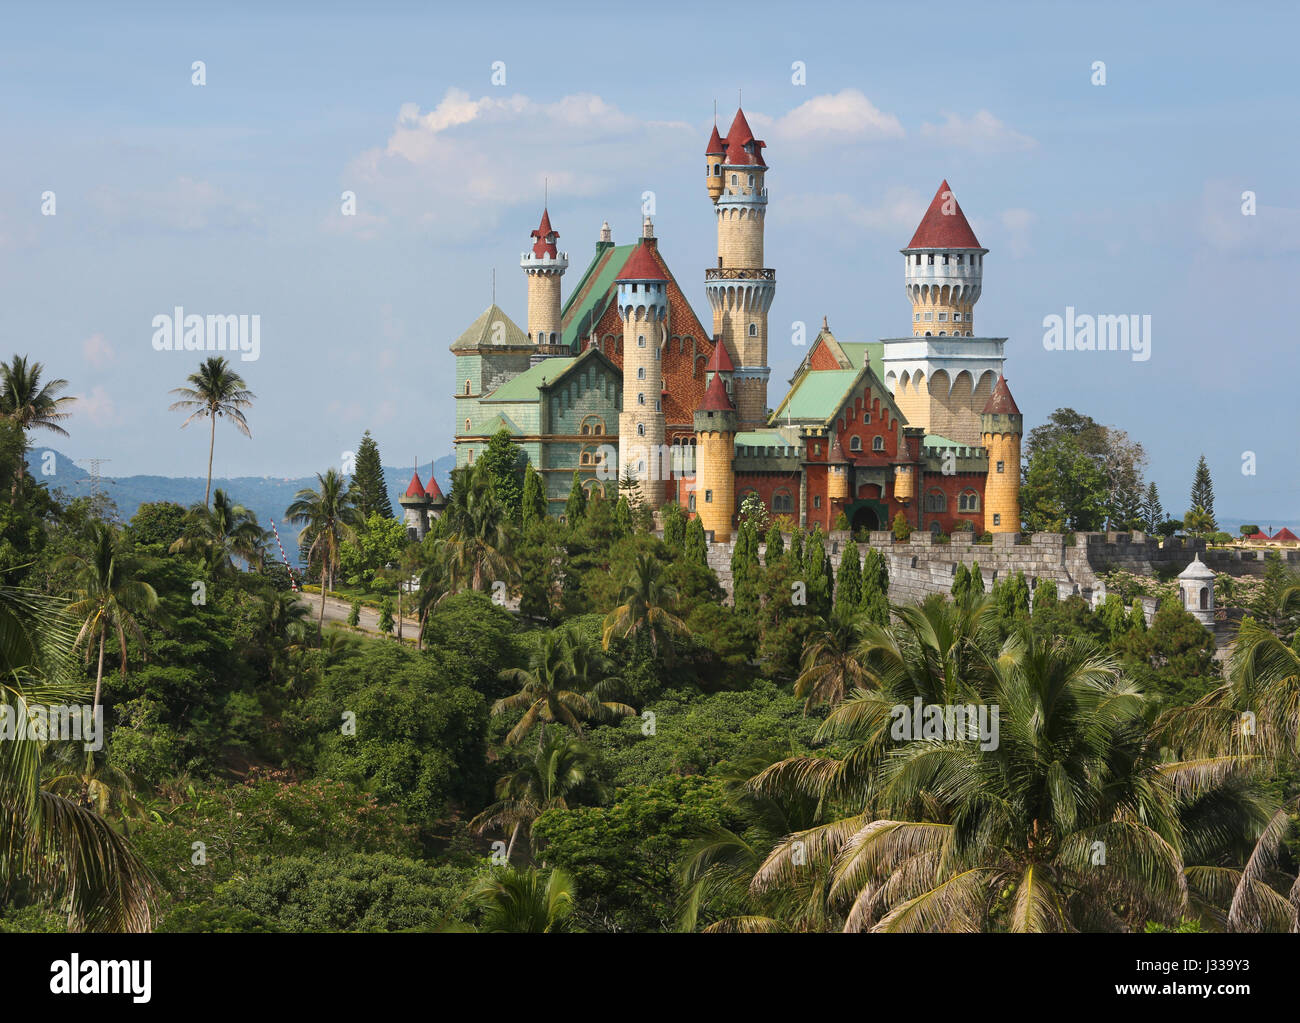 Château de fantaisie, Lemery, Batangas, Philippines, Asie Banque D'Images